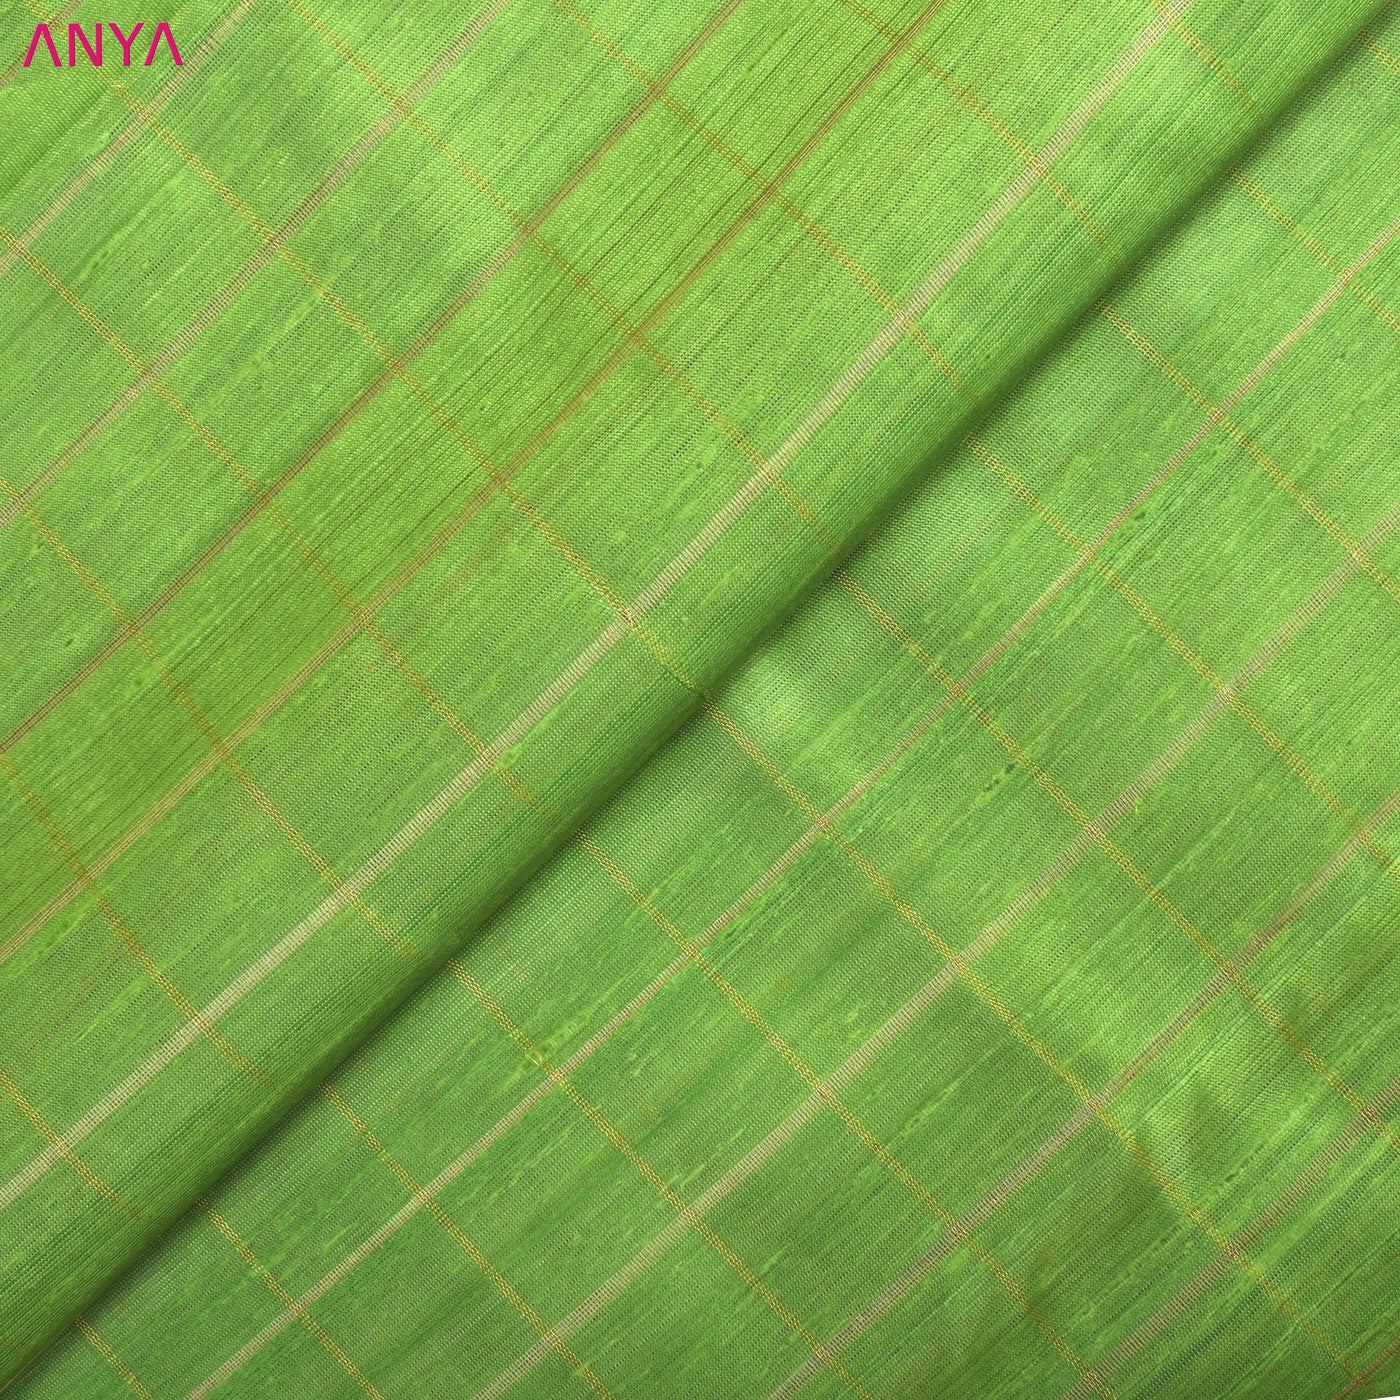 Samangha Green Tussar Raw Silk Fabric